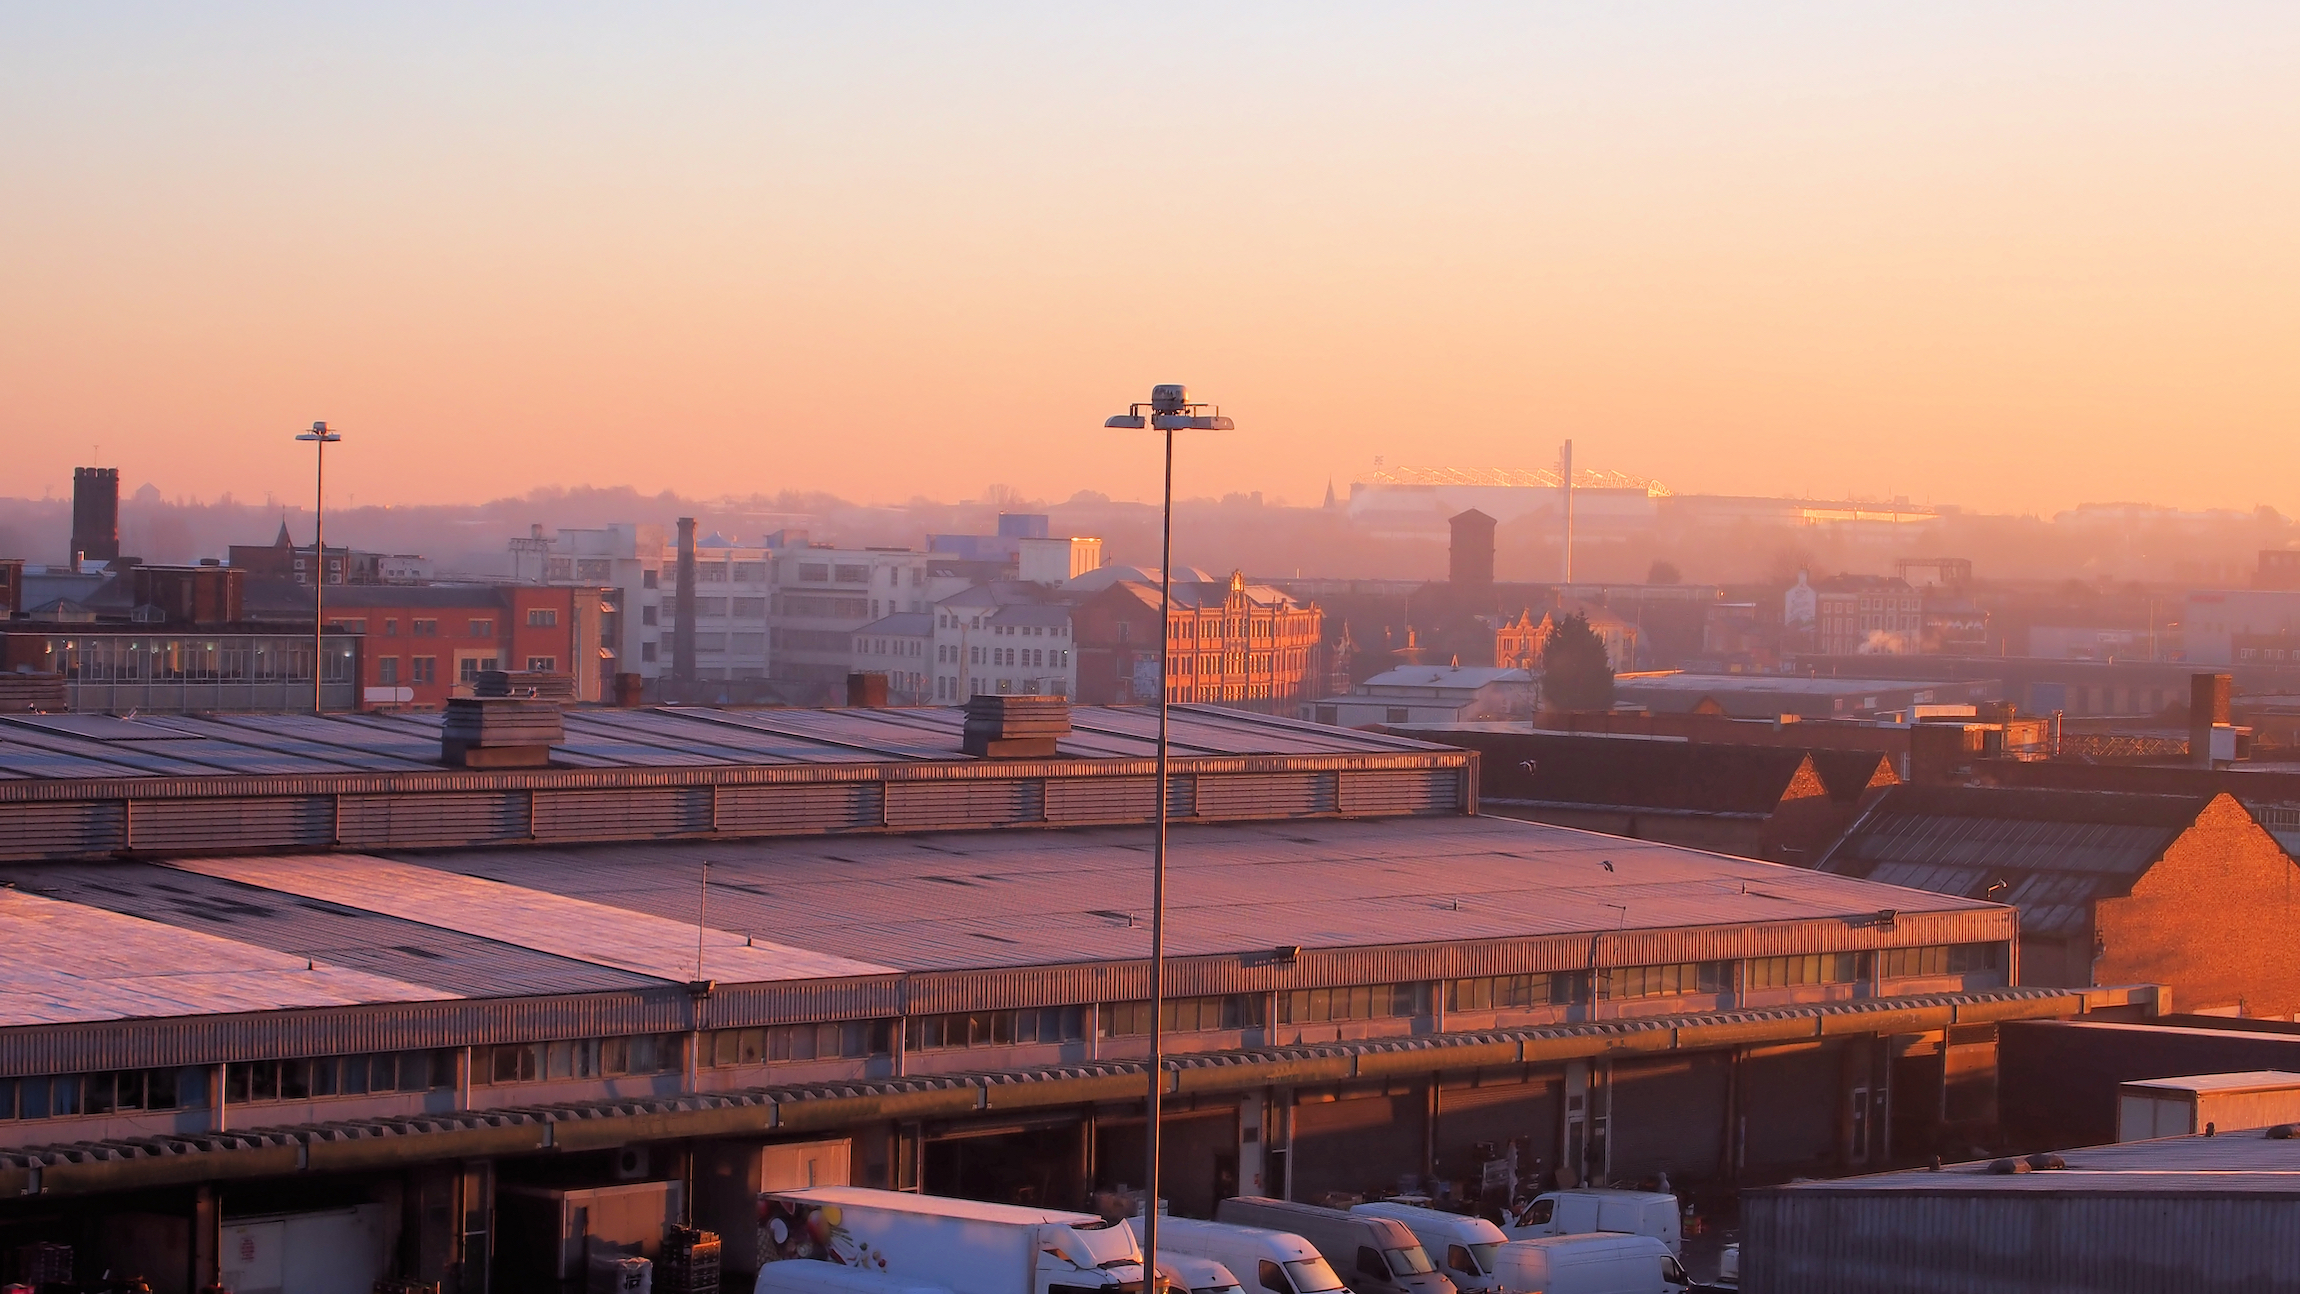 Birmingham Skyline nad rynkami hurtowymi z "Custard Factory" i terenami bluesowymi w tle. Obraz komercyjny